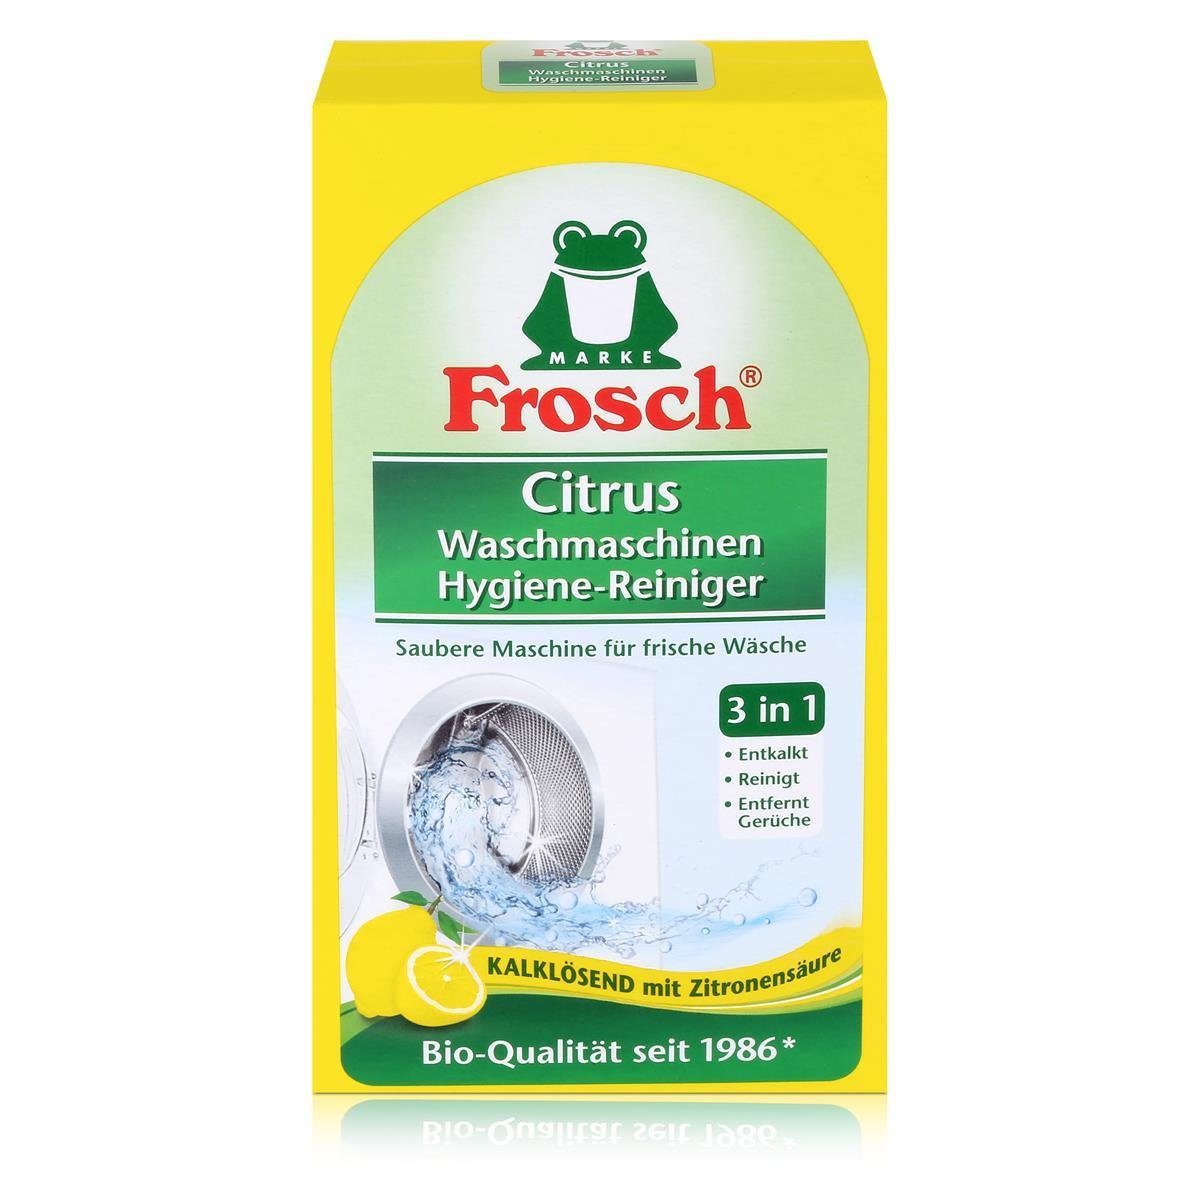 Waschmaschinen Citrus Kalklösend Spezialwaschmittel FROSCH Frosch 250g - Hygiene-Reiniger